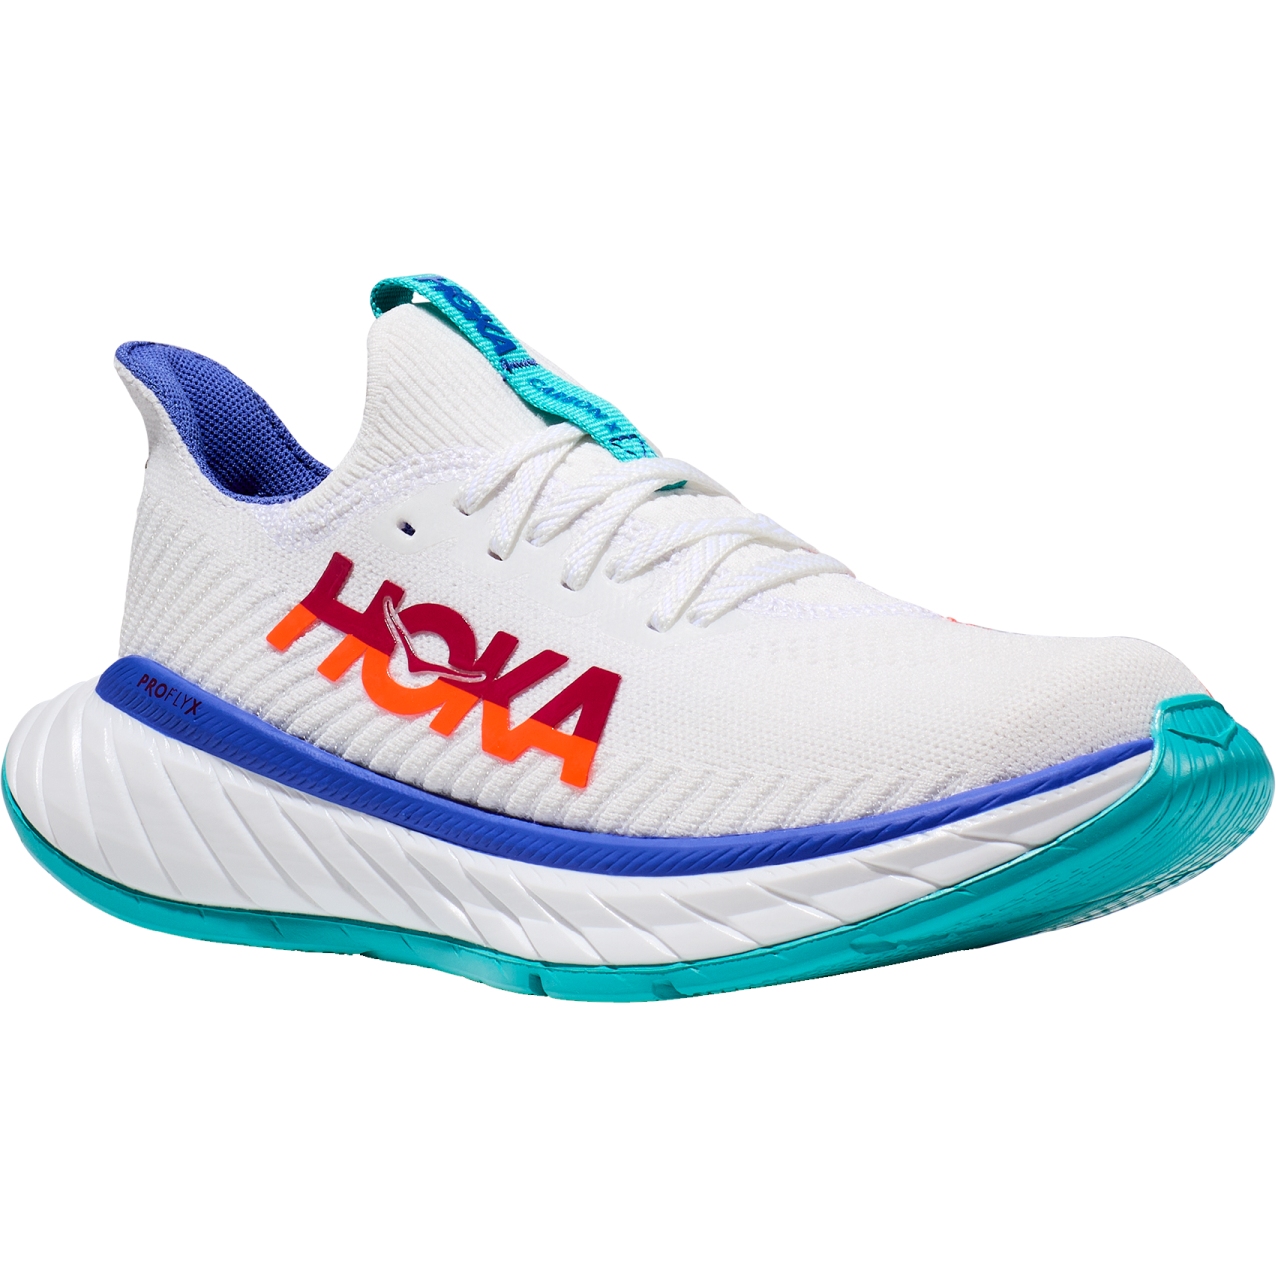 Produktbild von Hoka Carbon X 3 Damen Laufschuhe - weiß / flame